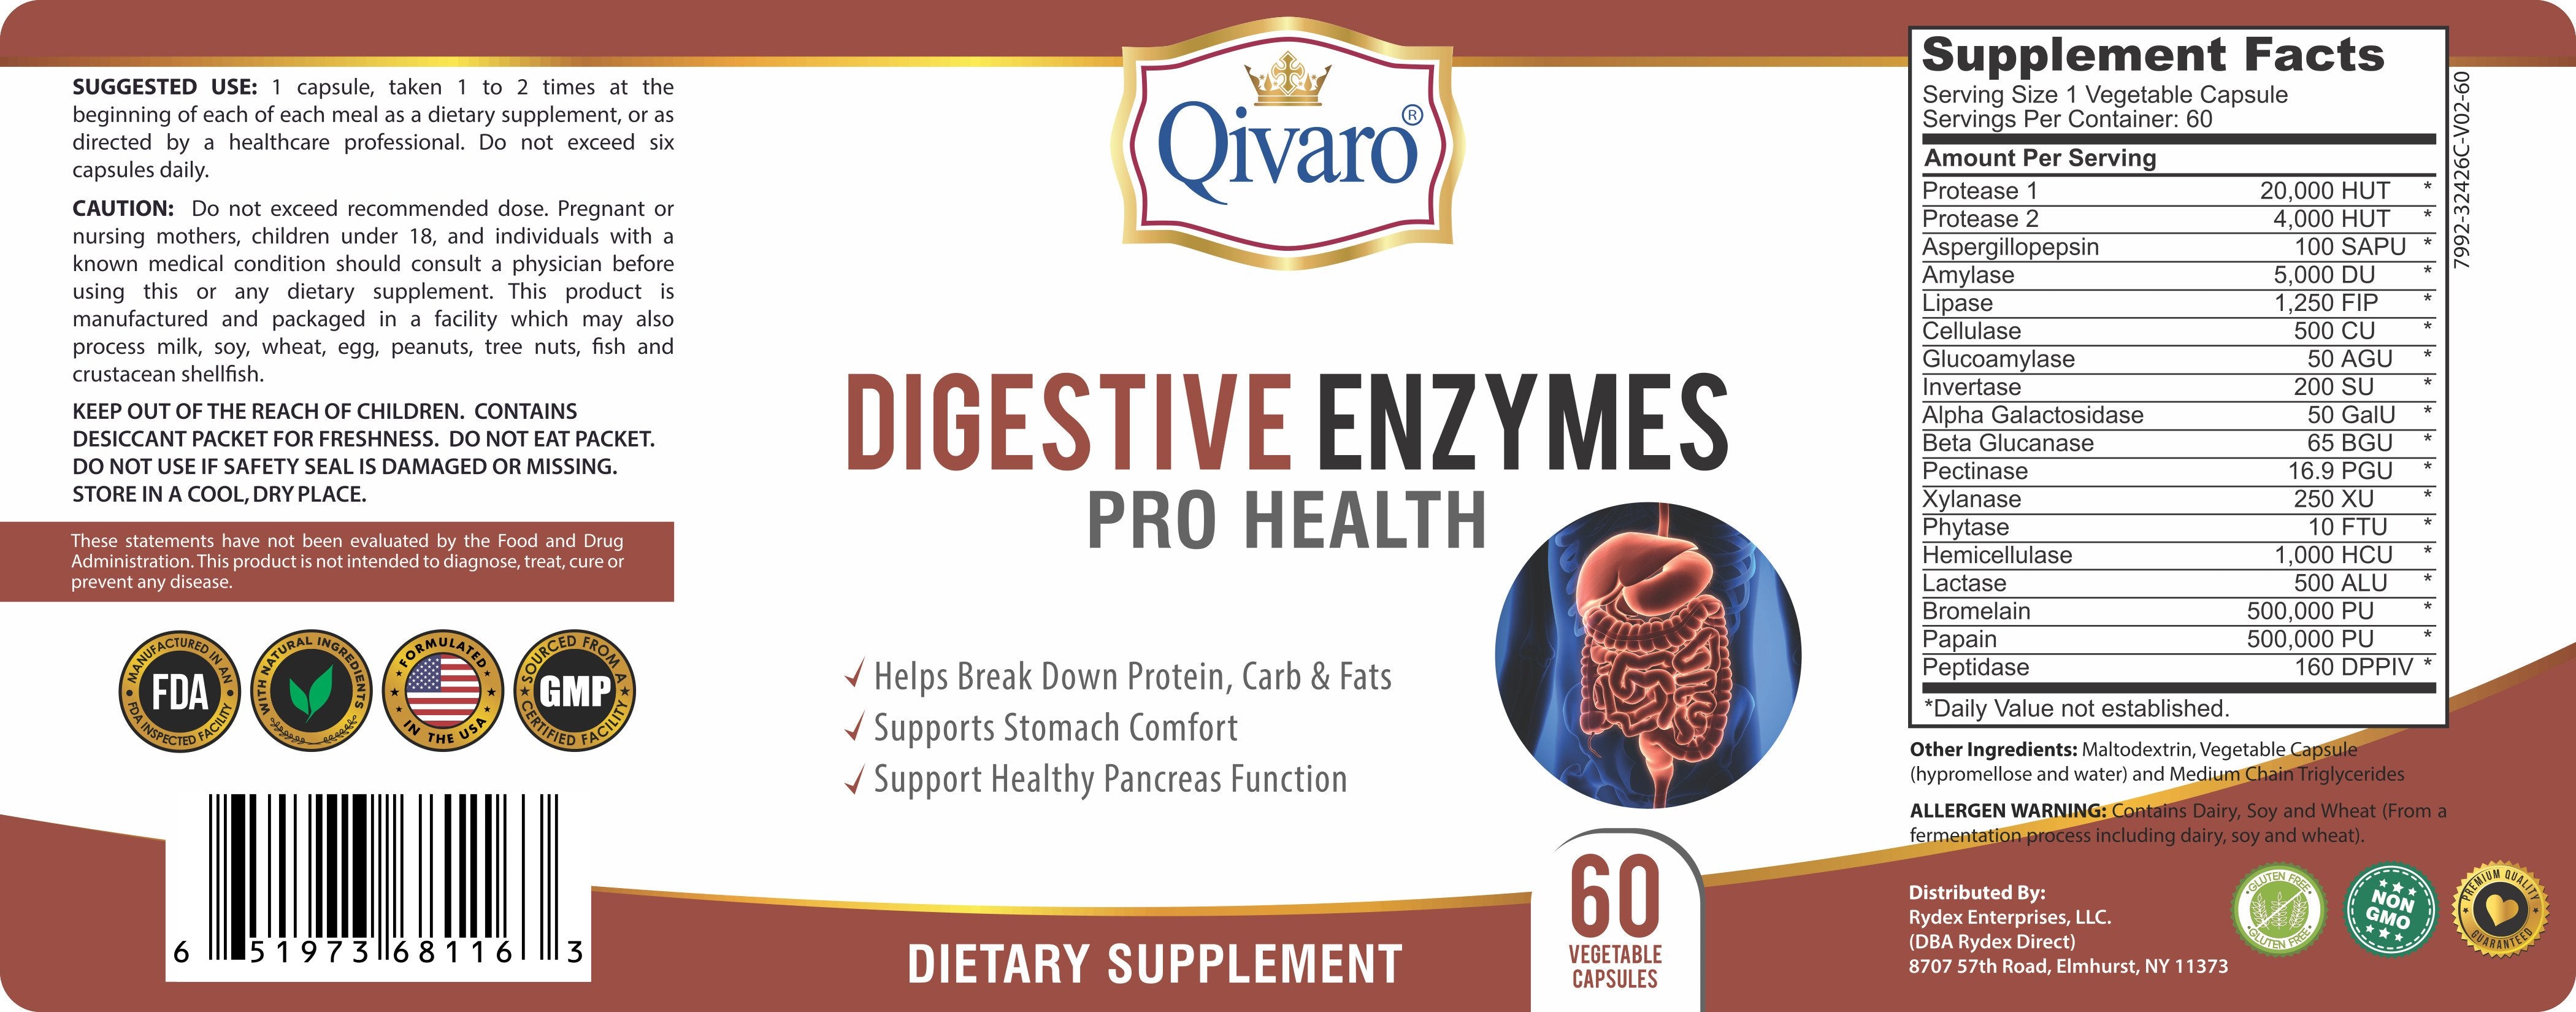 QIH28 - Digestive Enzymes